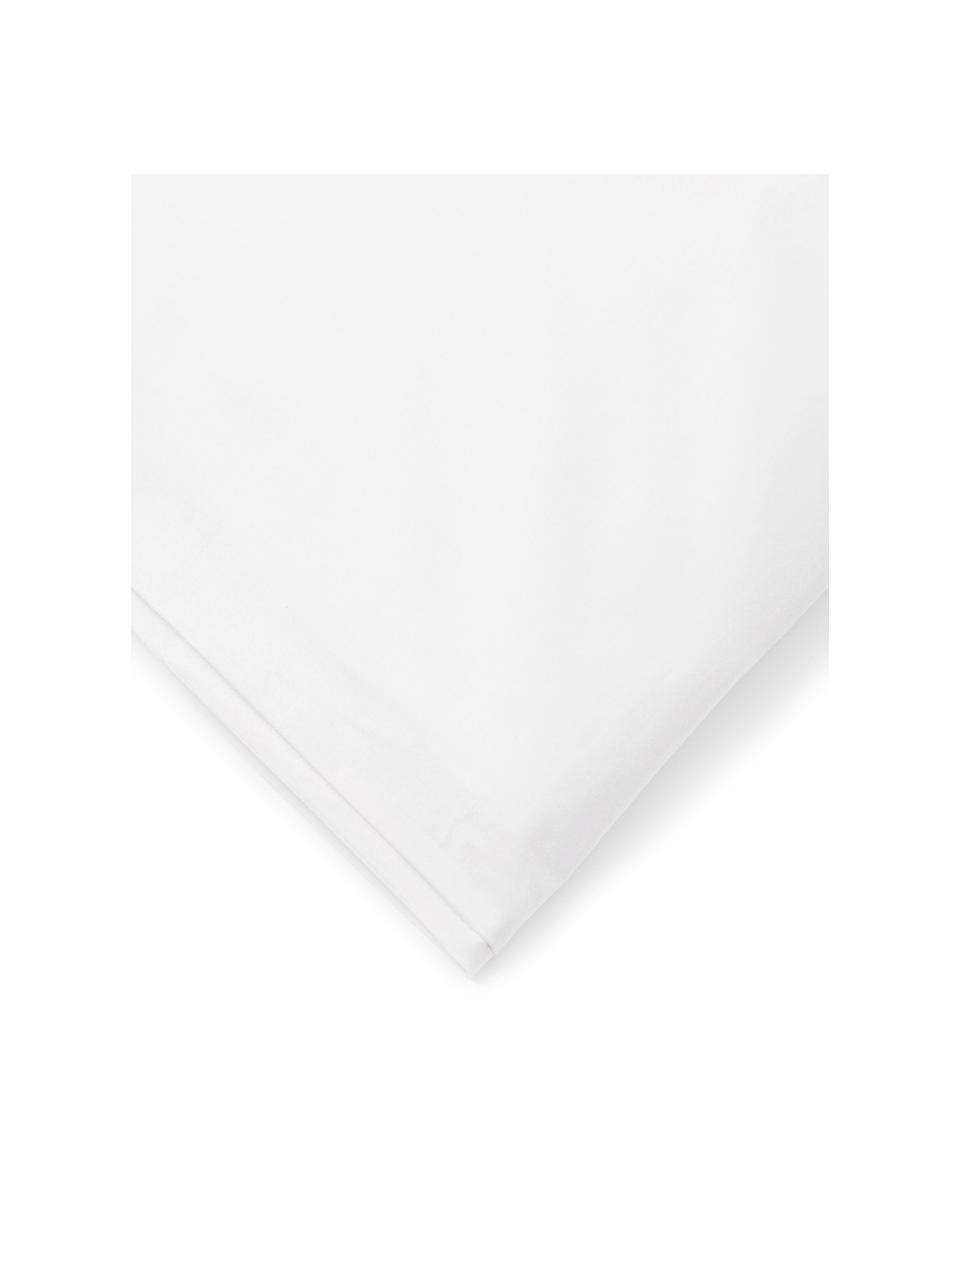 Funda nórdica Plain Dye, Algodón
El algodón da una sensación agradable y suave en la piel, absorbe bien la humedad y es adecuado para personas alérgicas, Blanco, Cama 180/200 cm (260 x 240 cm)